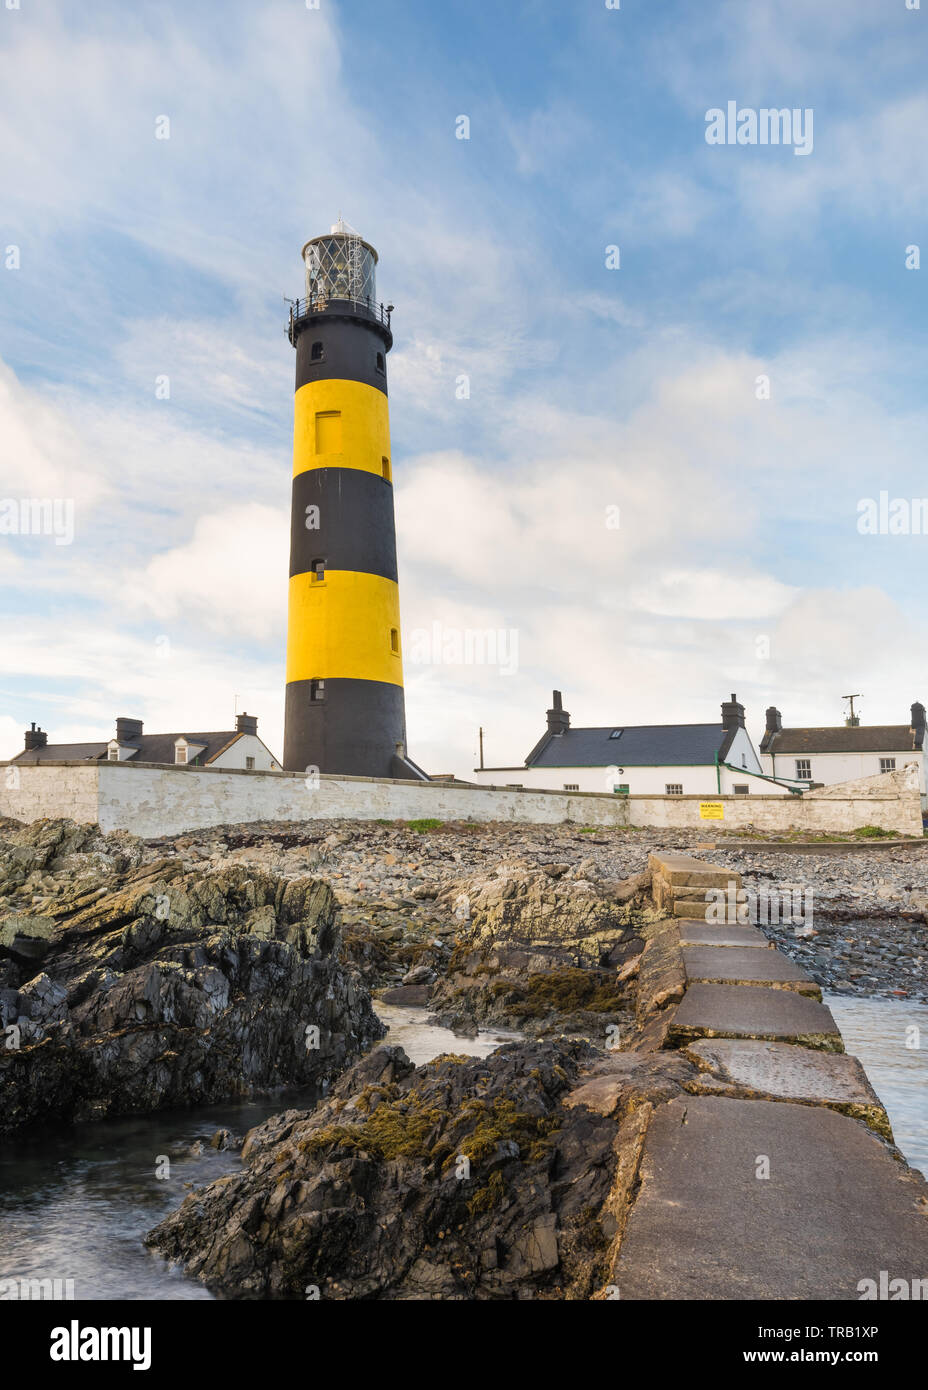 Saint John's Lighthouse, Killough, Downpatrick, comté de Down, Irlande du Nord. Banque D'Images